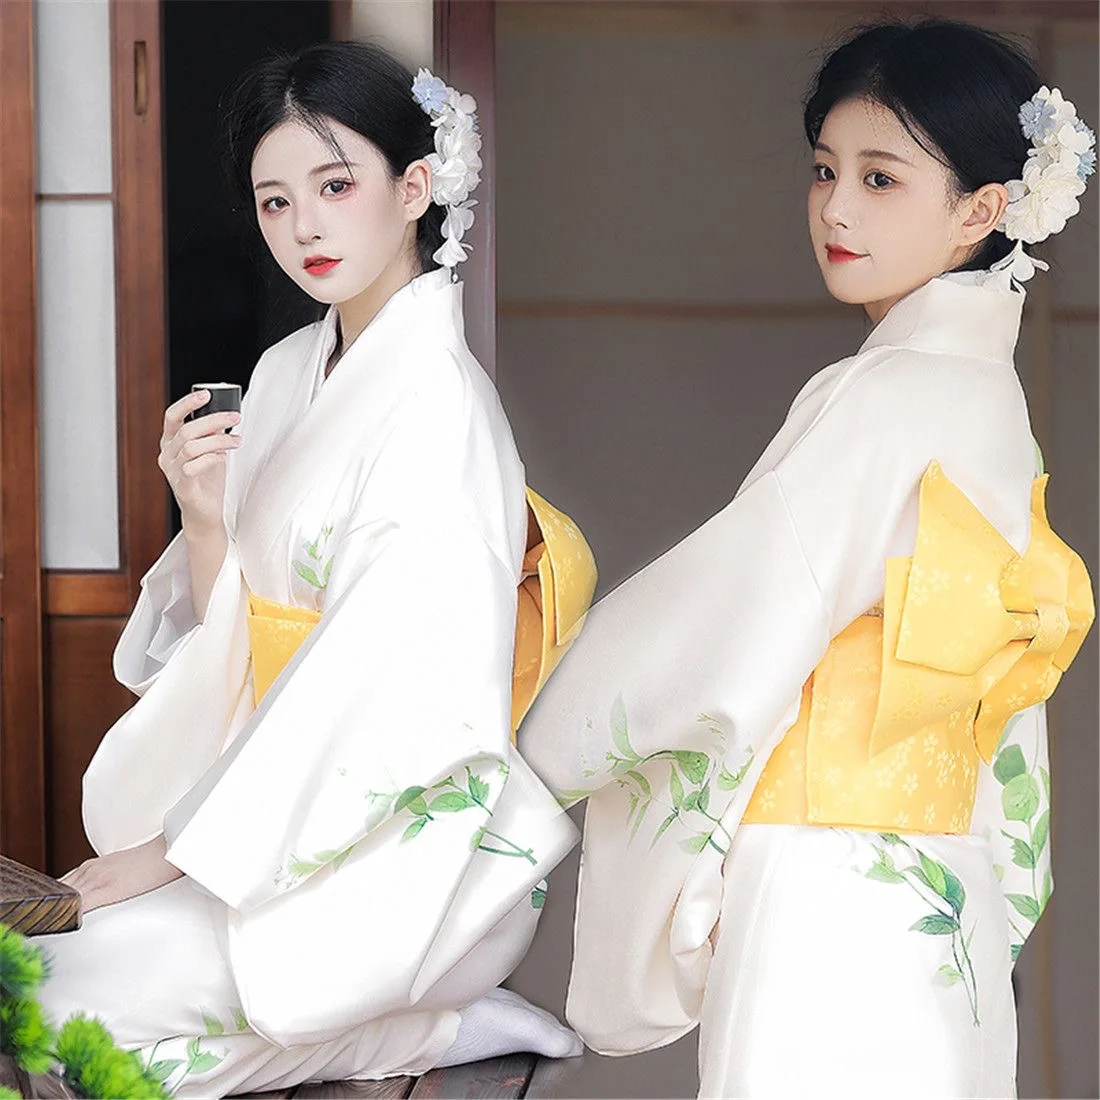 אופנה לאומי מגמות נשים סקסי קימונו יאקאטה עם אובי חידוש שמלת ערב יפנית Cosplay תלבושות קימונו פרחונית לנשים - 4